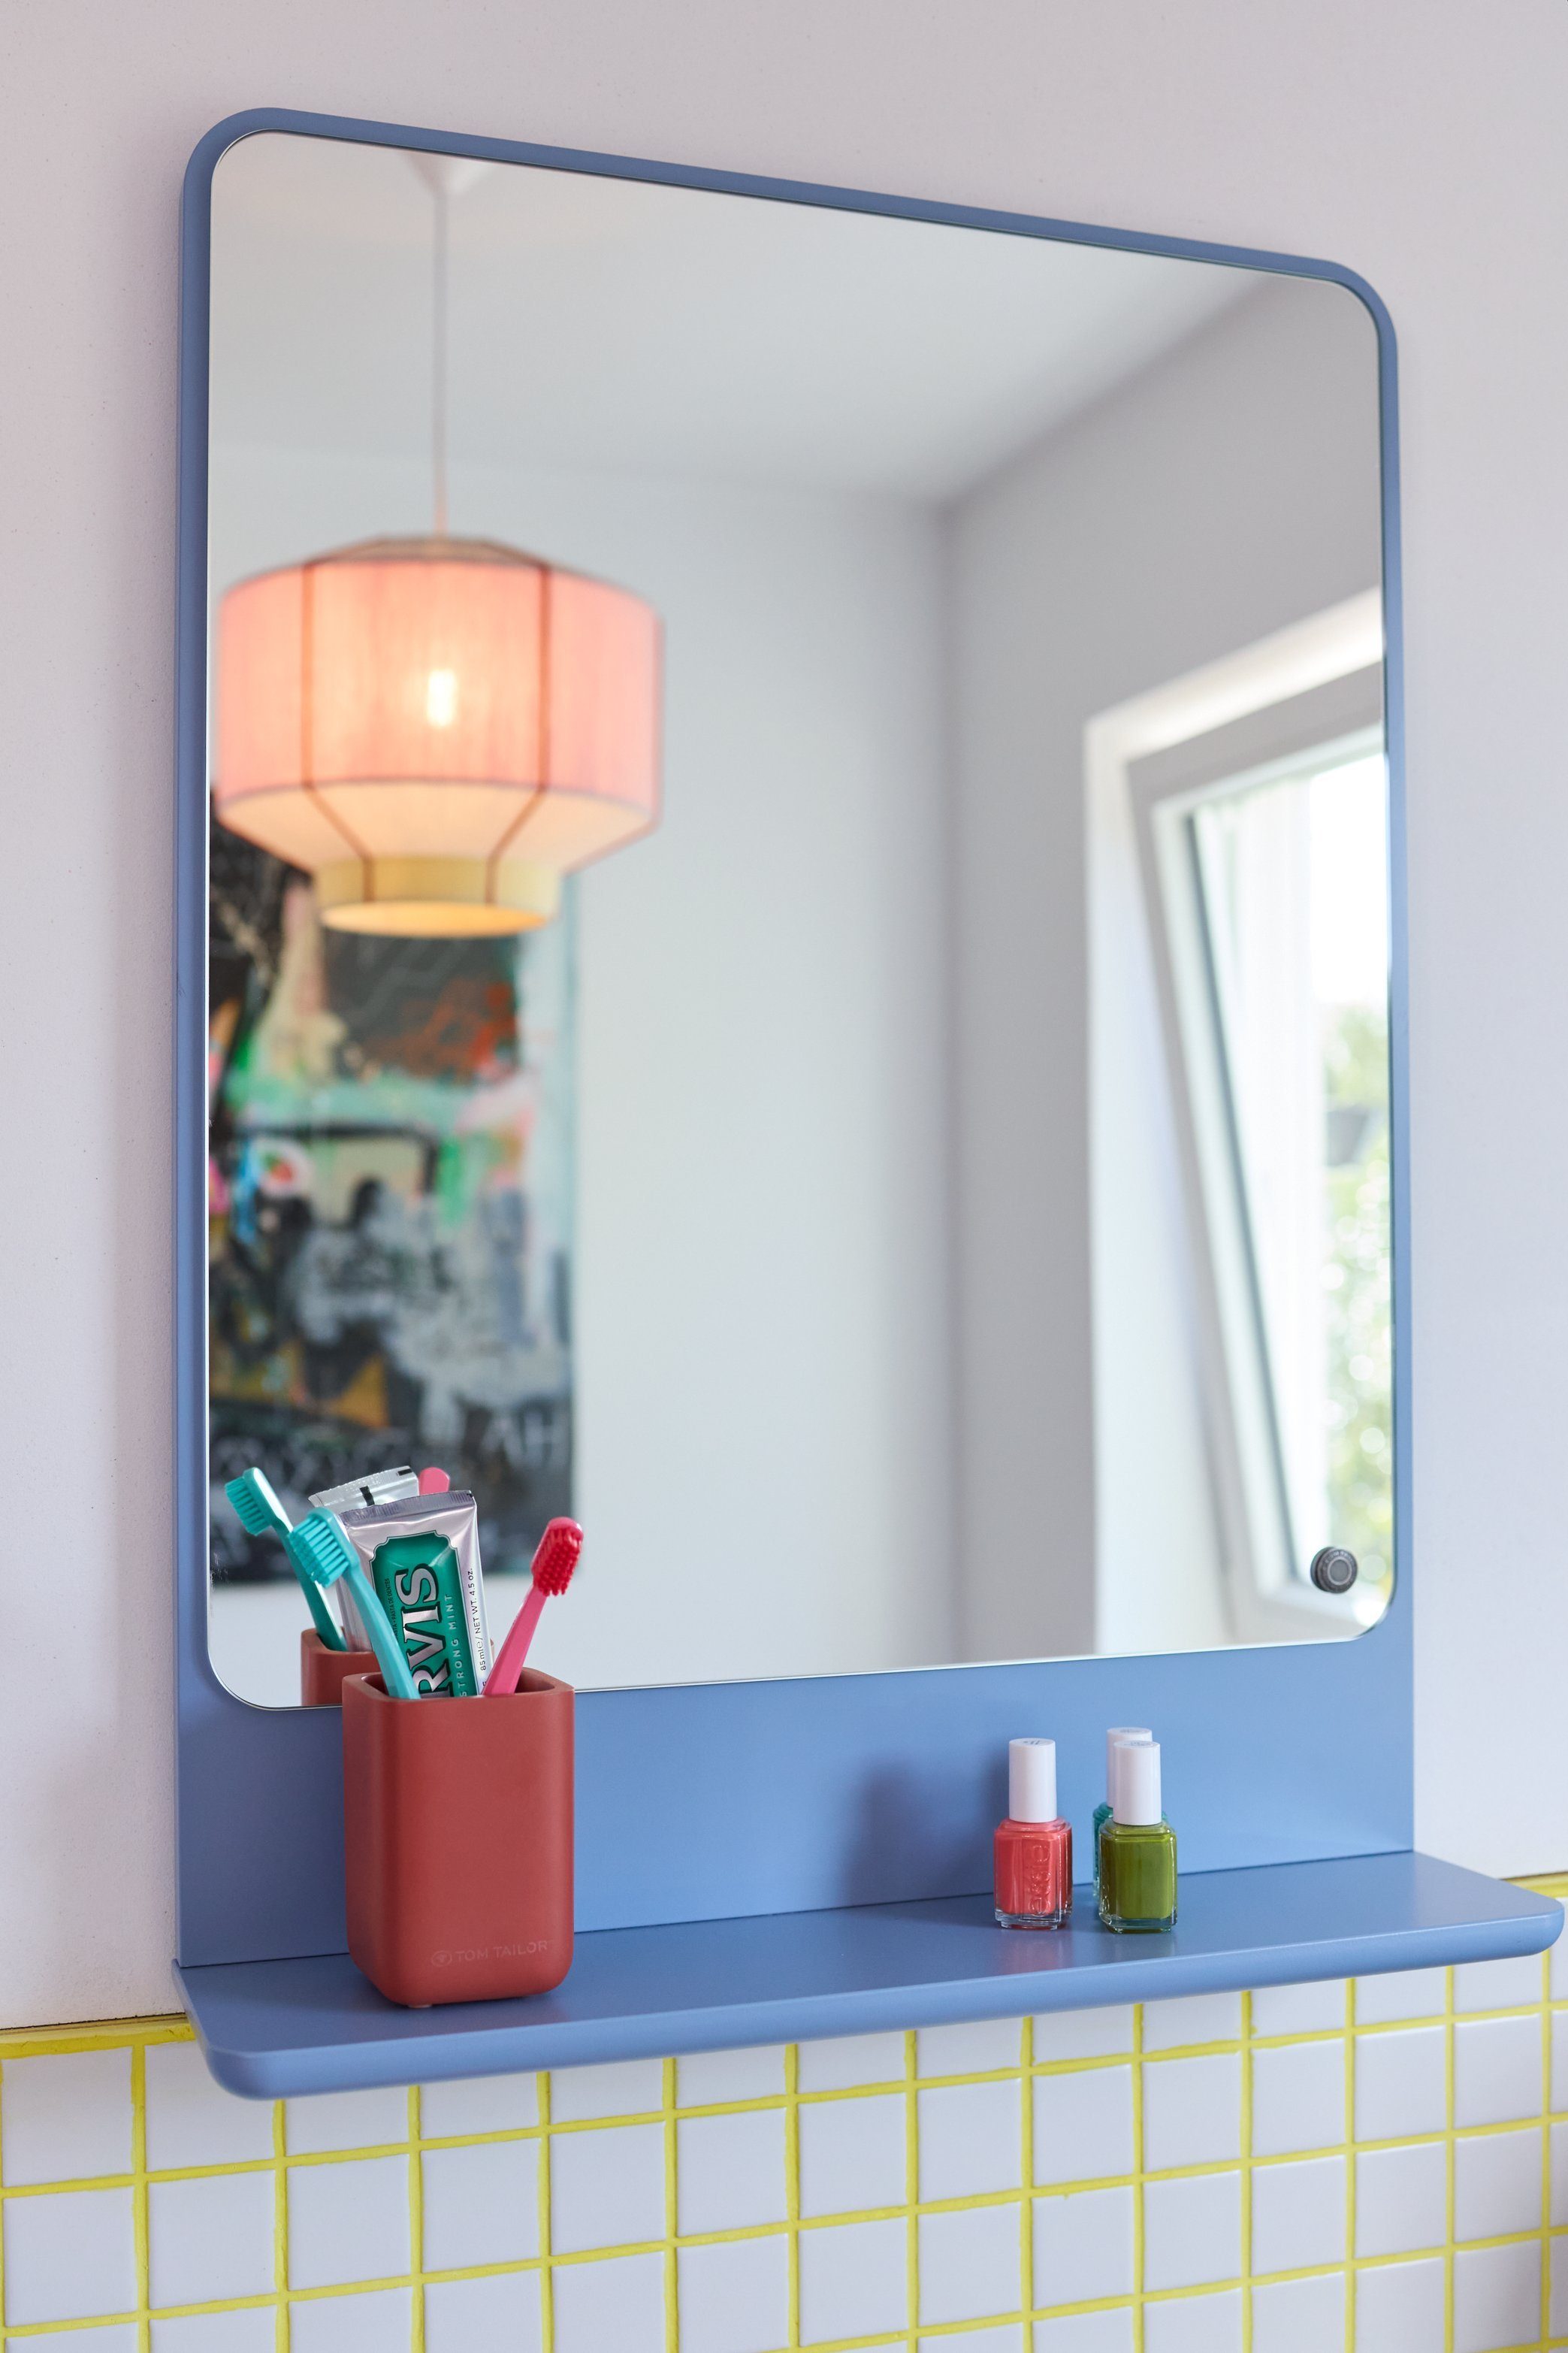 TOM TAILOR HOME Badspiegel COLOR BATH Spiegelelement - in vielen schönen Farben - 70 x 52 x 13 cm, hochwertig lackiertes MDF, gerundete Kanten dove